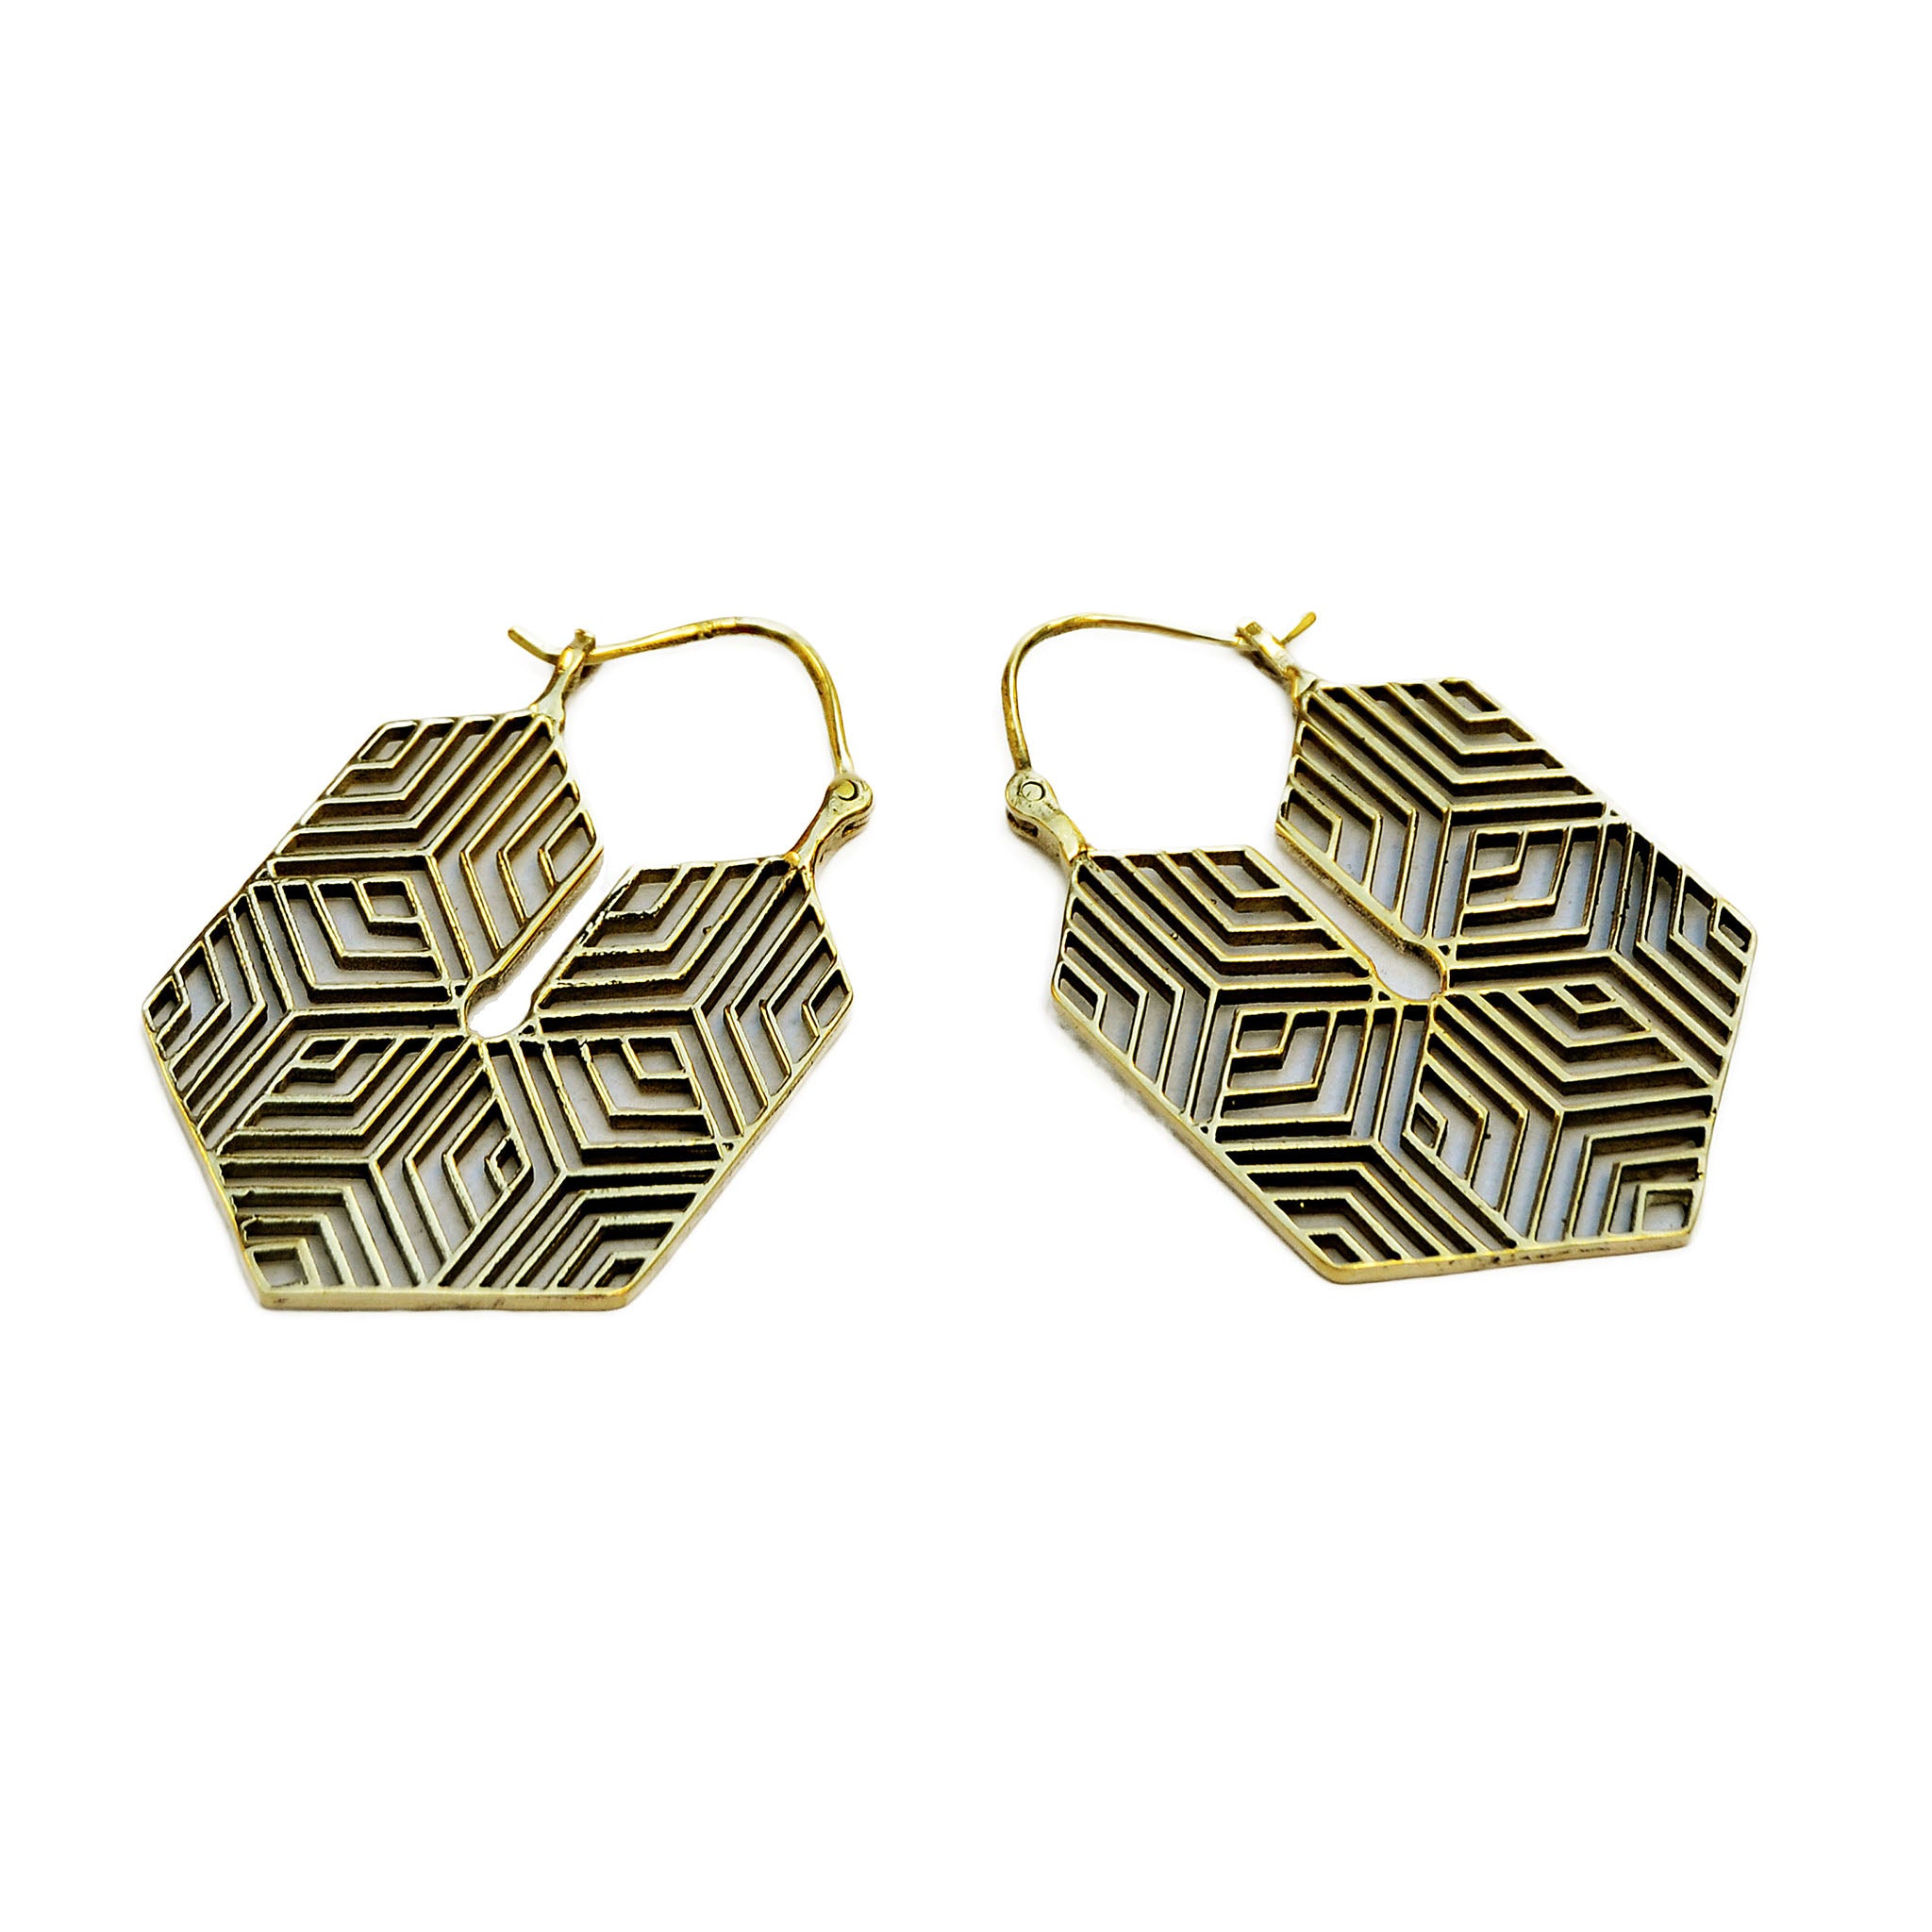 Brass geometric earrings